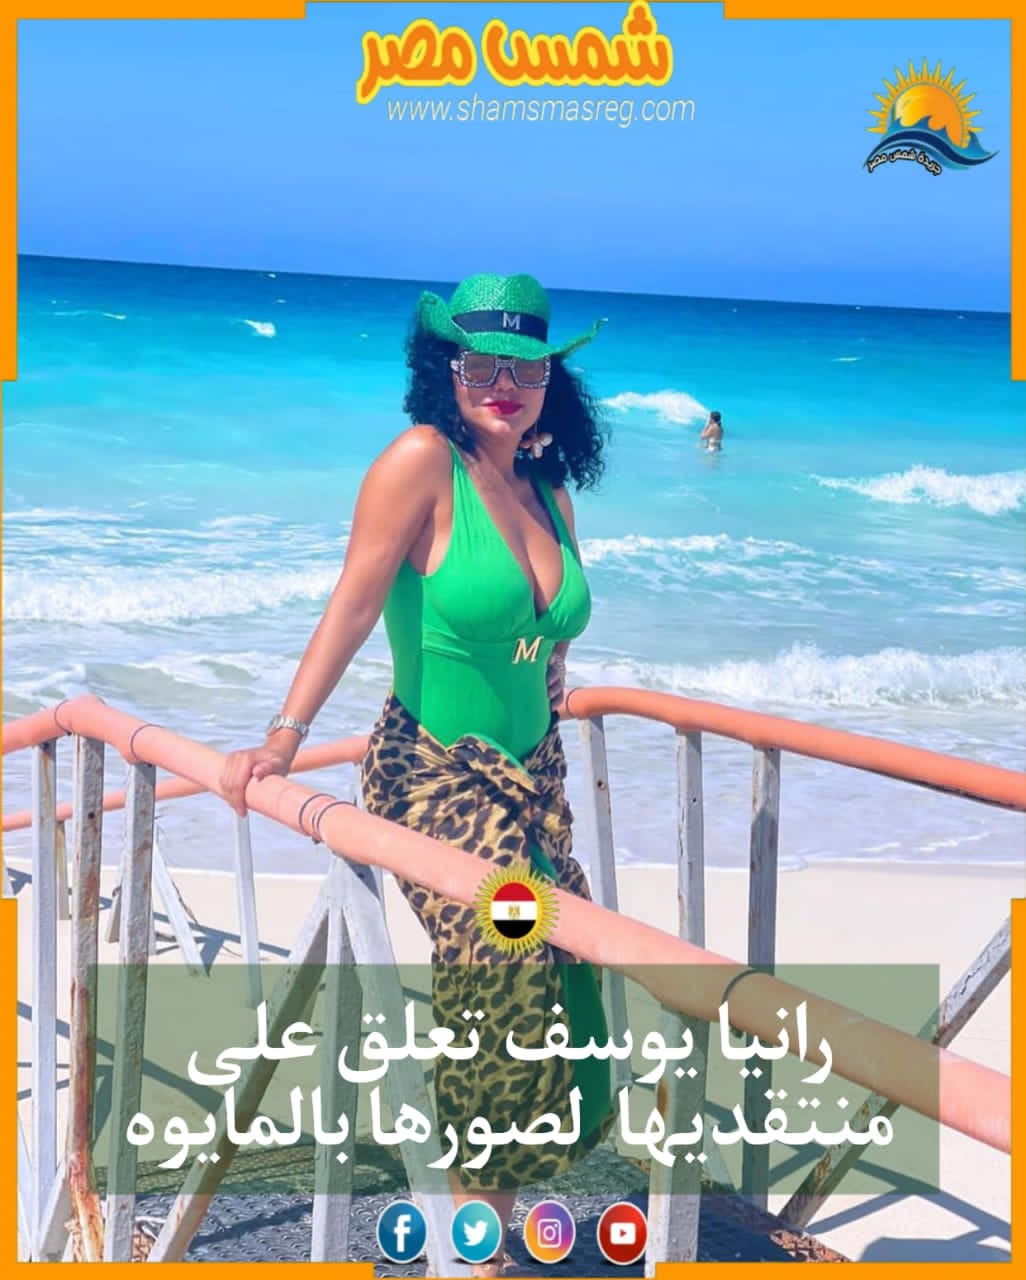 |شمس مصر|.. رانيا يوسف تعلق على منتقديها لصورها بالمايوه